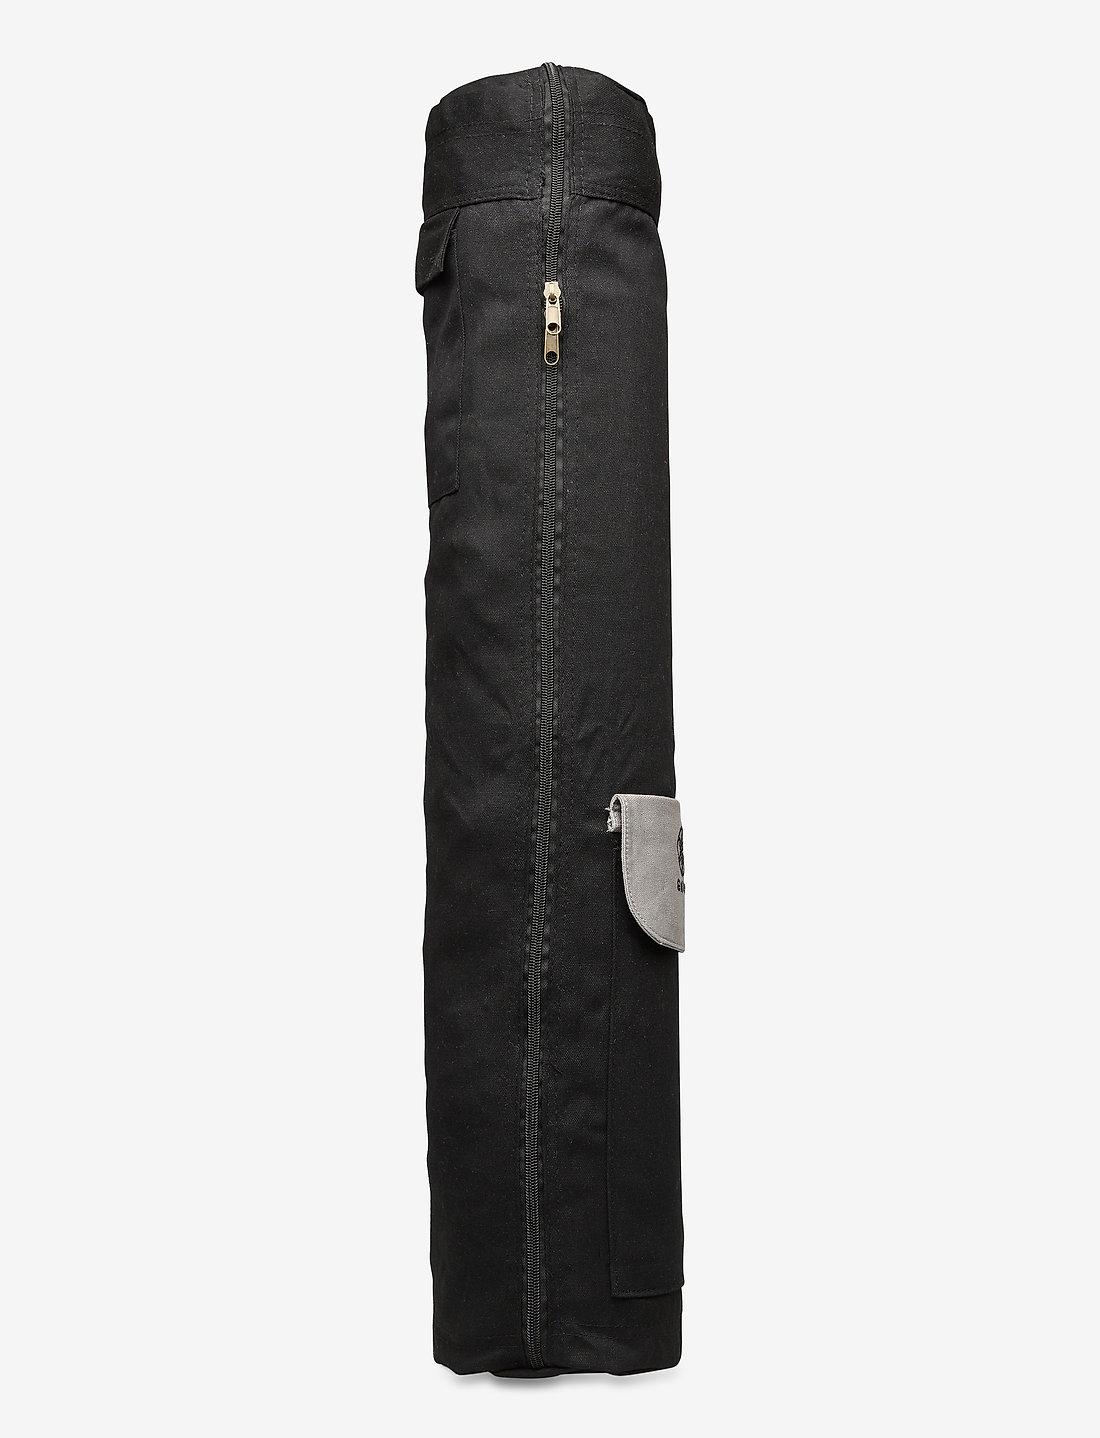 Gaiam Yoga Mat Sling Strap Bag, Black